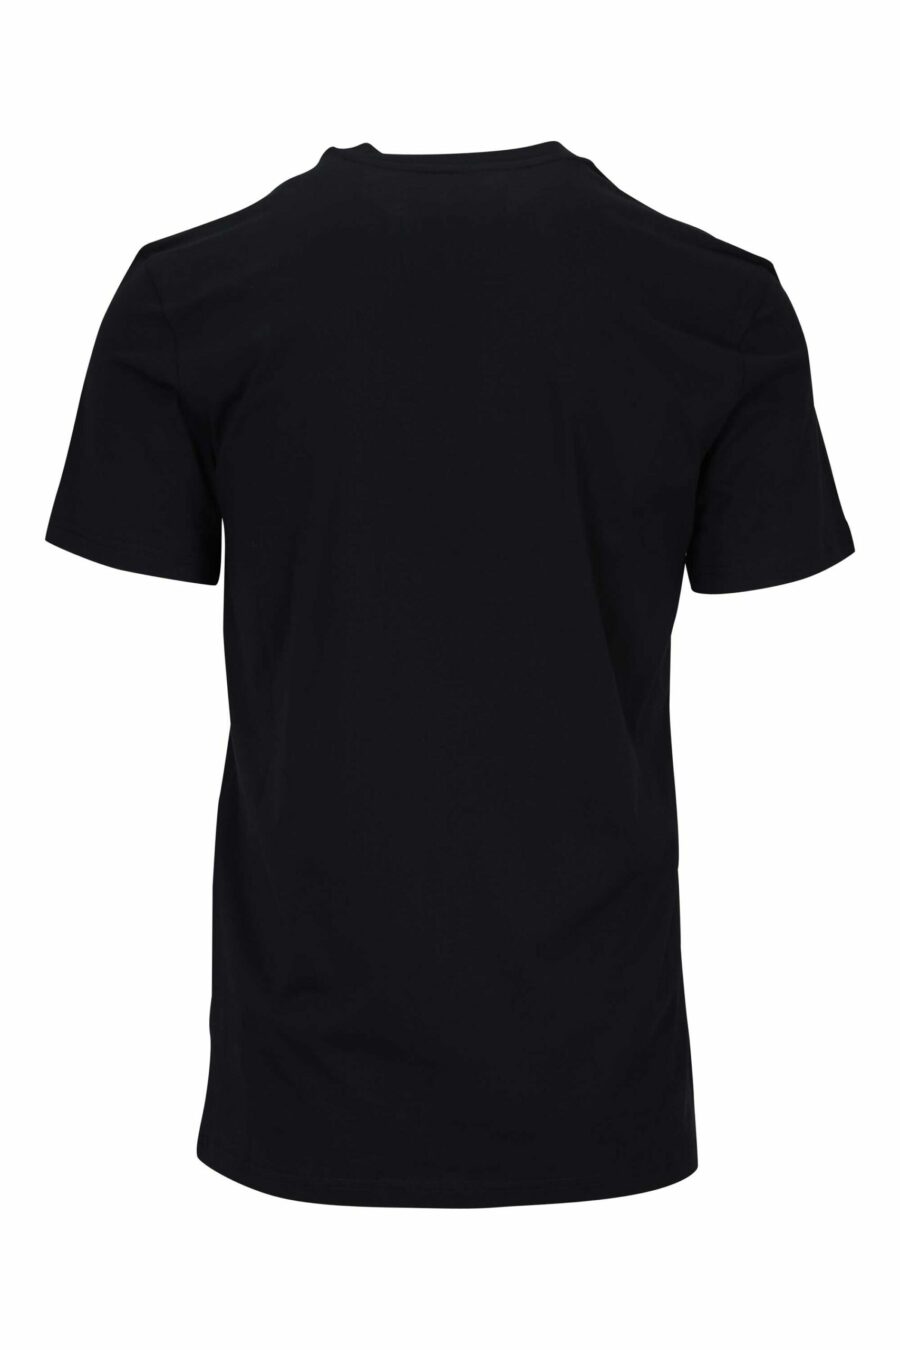 T-shirt noir avec minilogue d'ours à pois monochrome - 667113455969 1 scaled